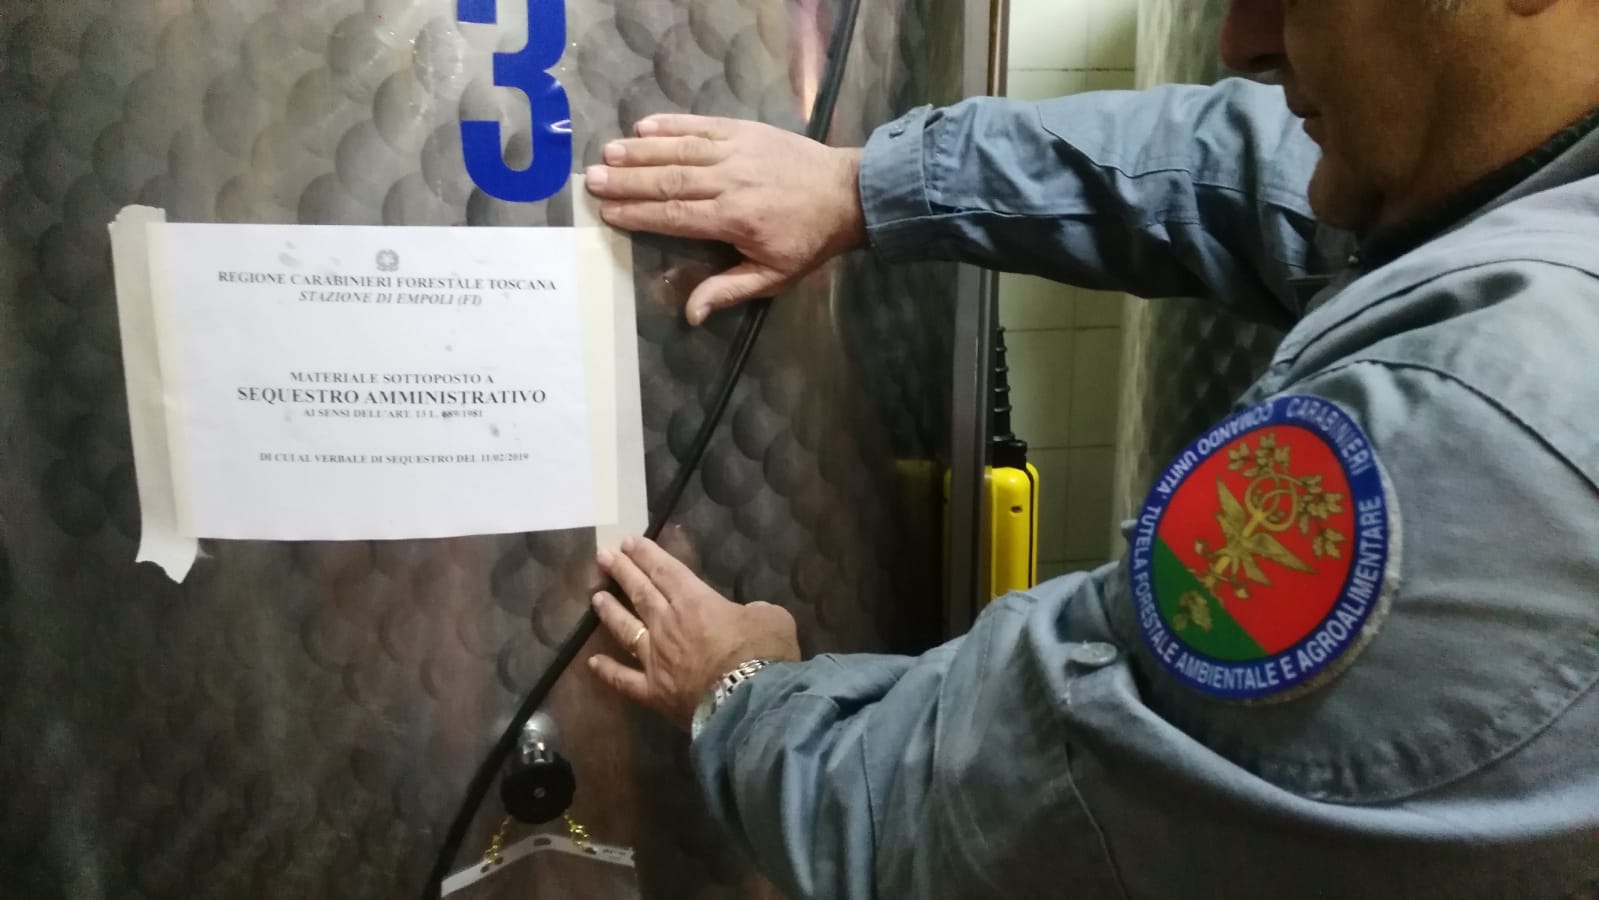 carabinieri forestali sequestrano 7.100 litri di olio